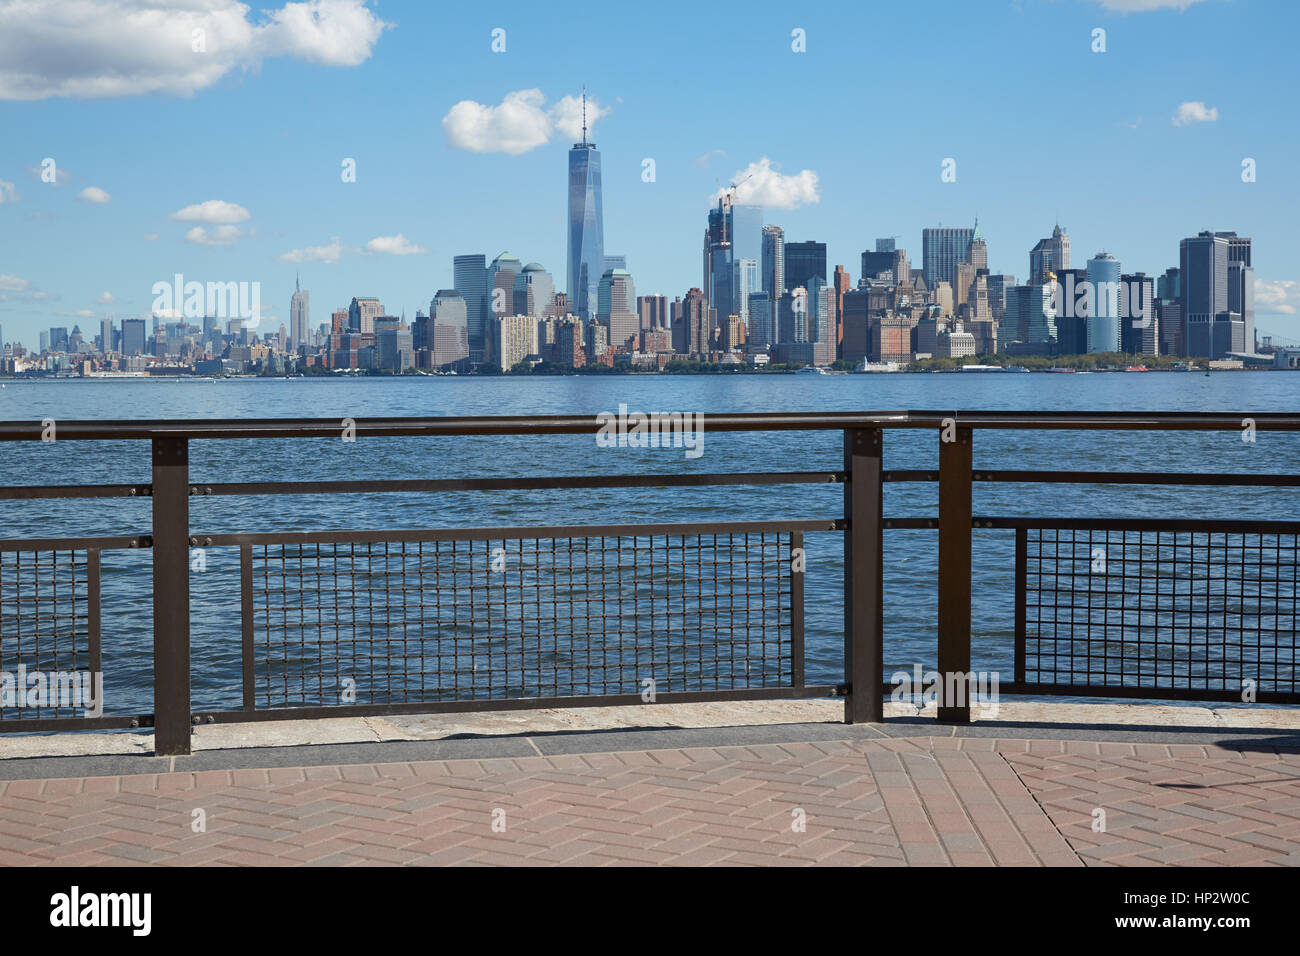 New York city skyline view from dock vide exposée dans une journée ensoleillée Banque D'Images